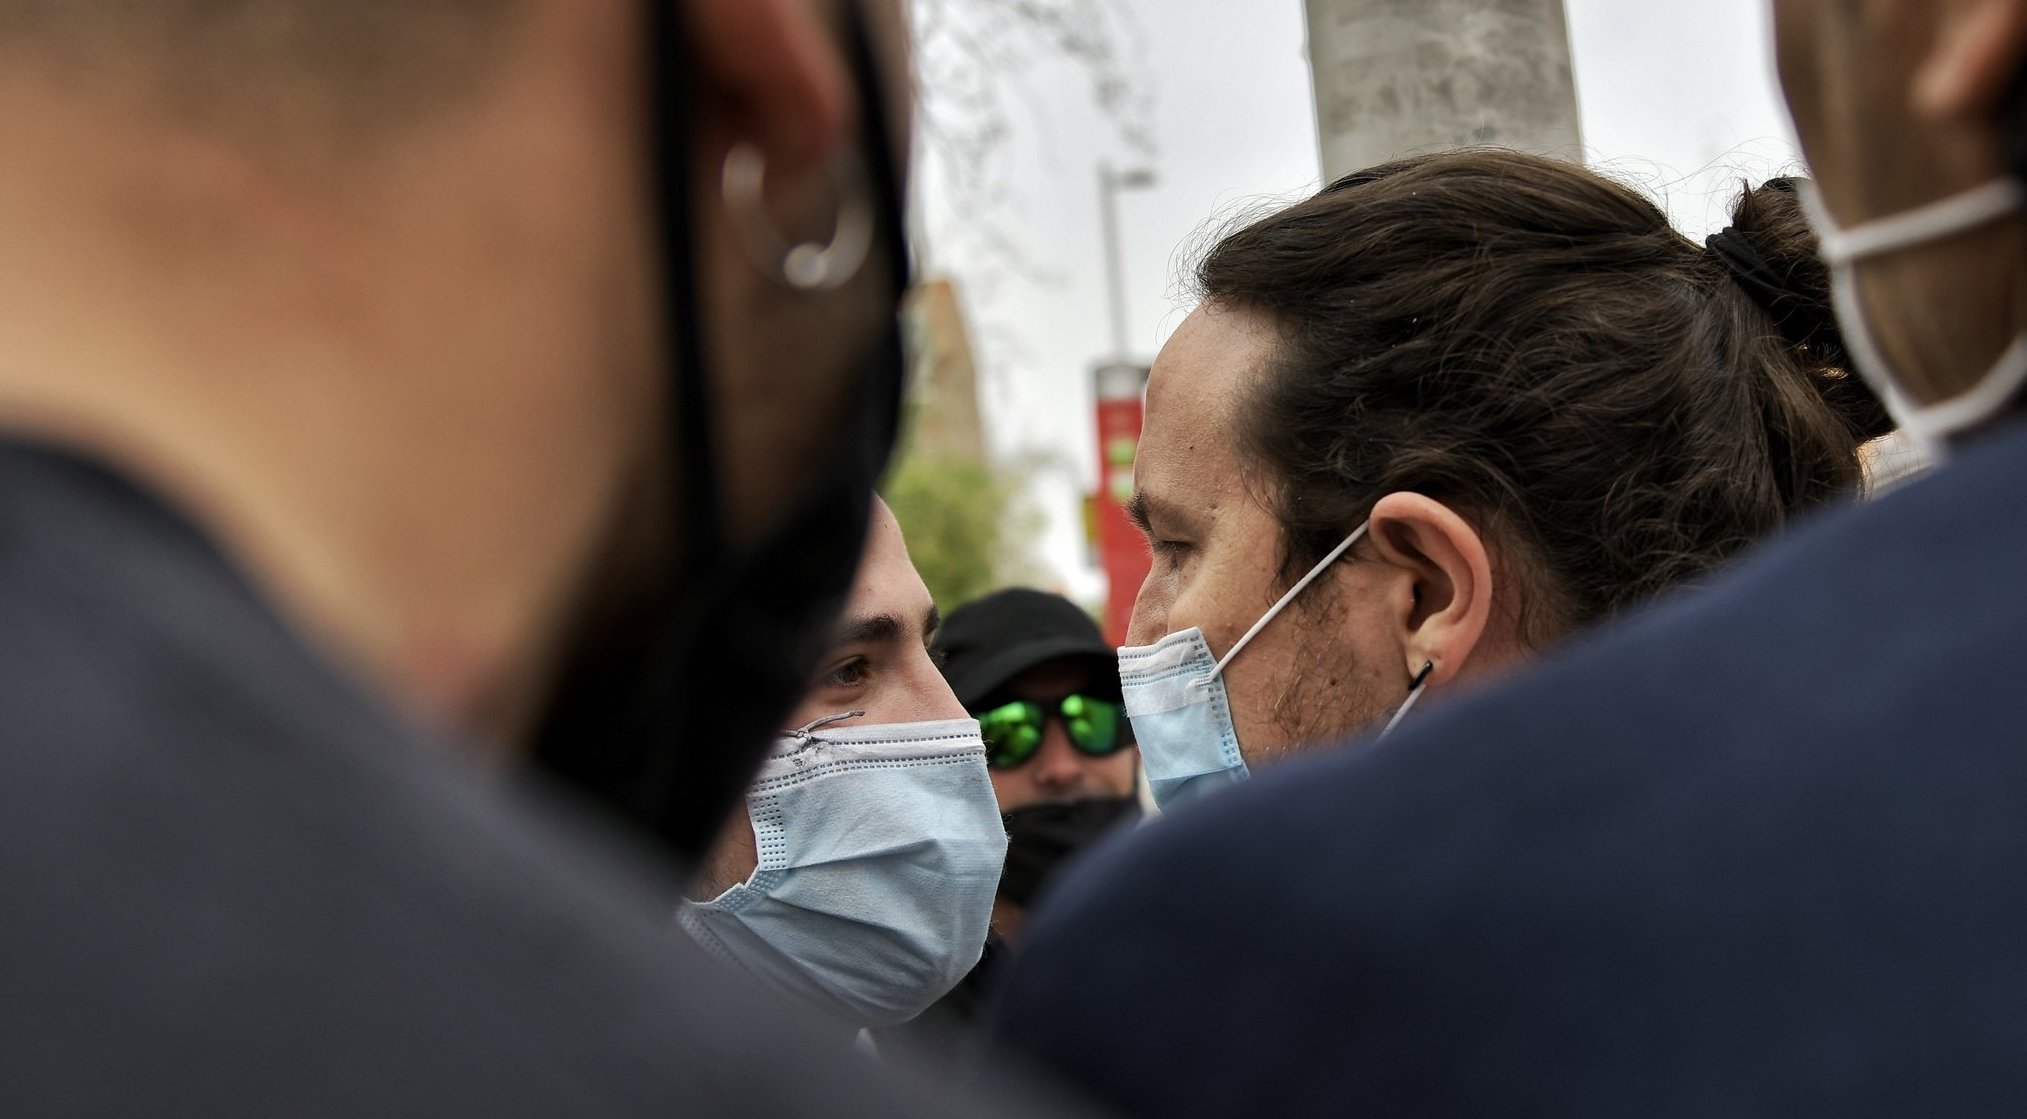 Pablo Iglesias cara a cara con uno de los neonazis - Imagen de Daniel Gago